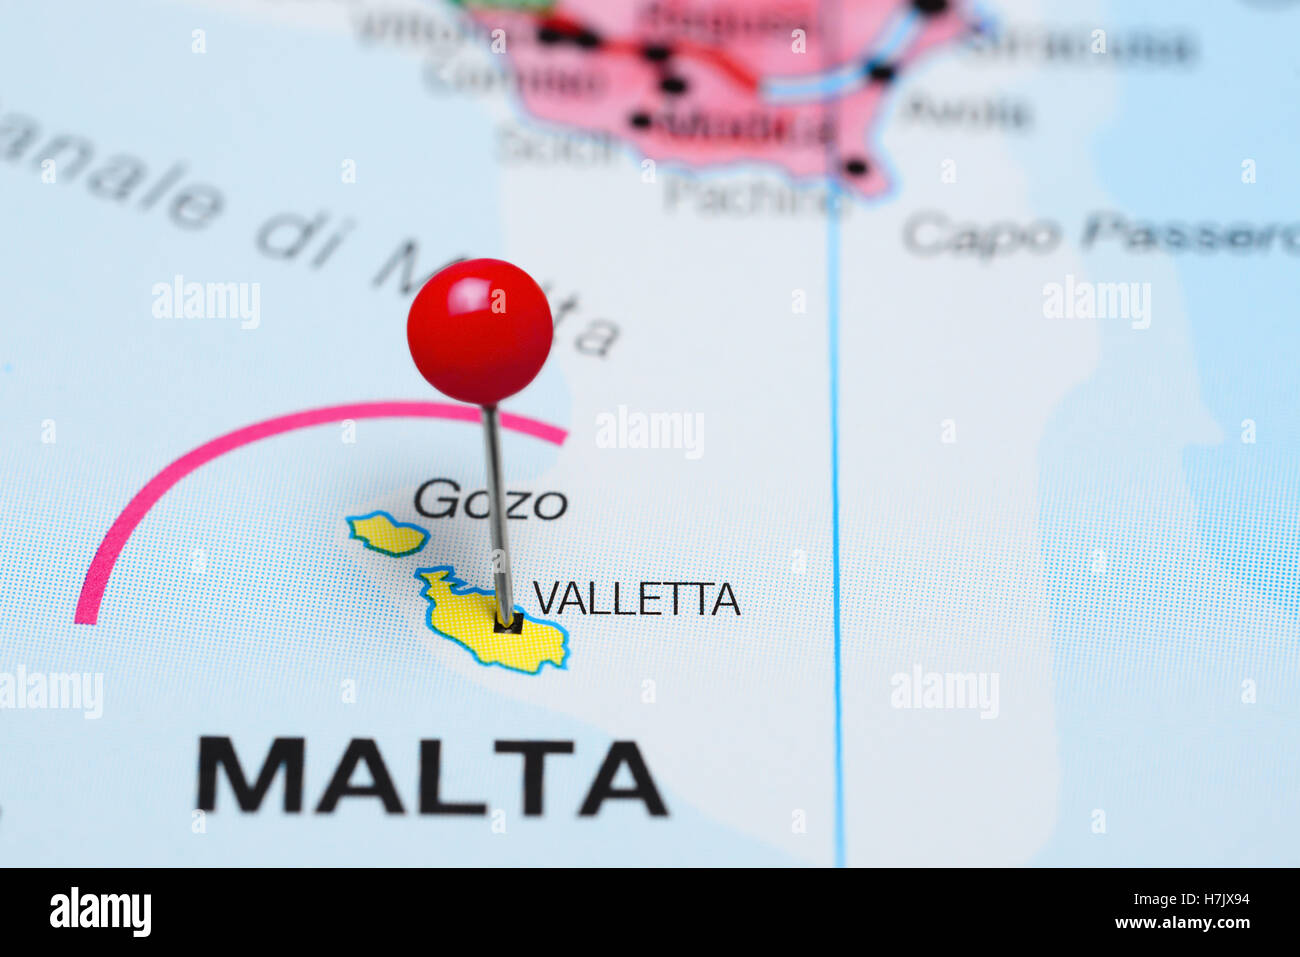 Valletta pinned on a map of Malta Stock Photo